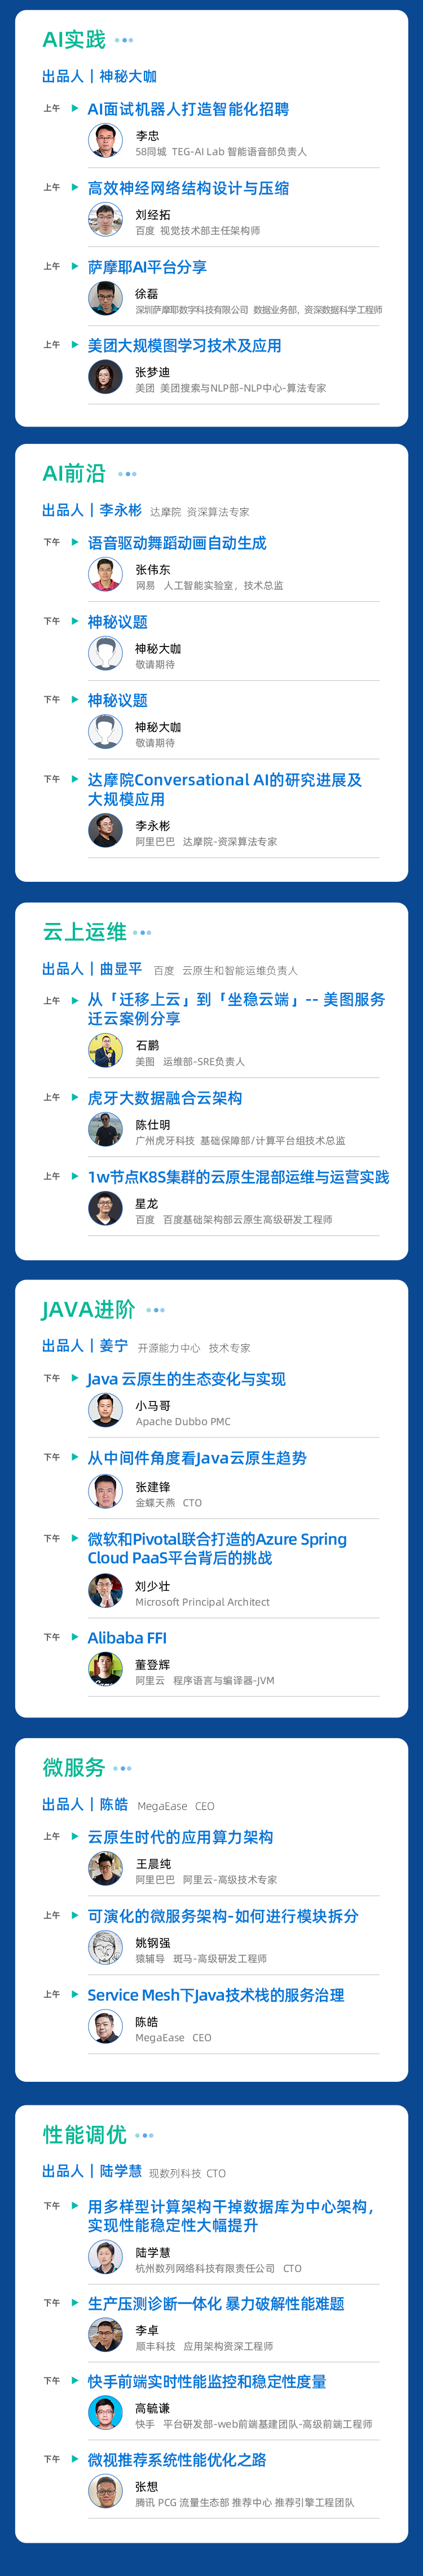 2021第七屆GIAC互聯網架構大會---深圳站